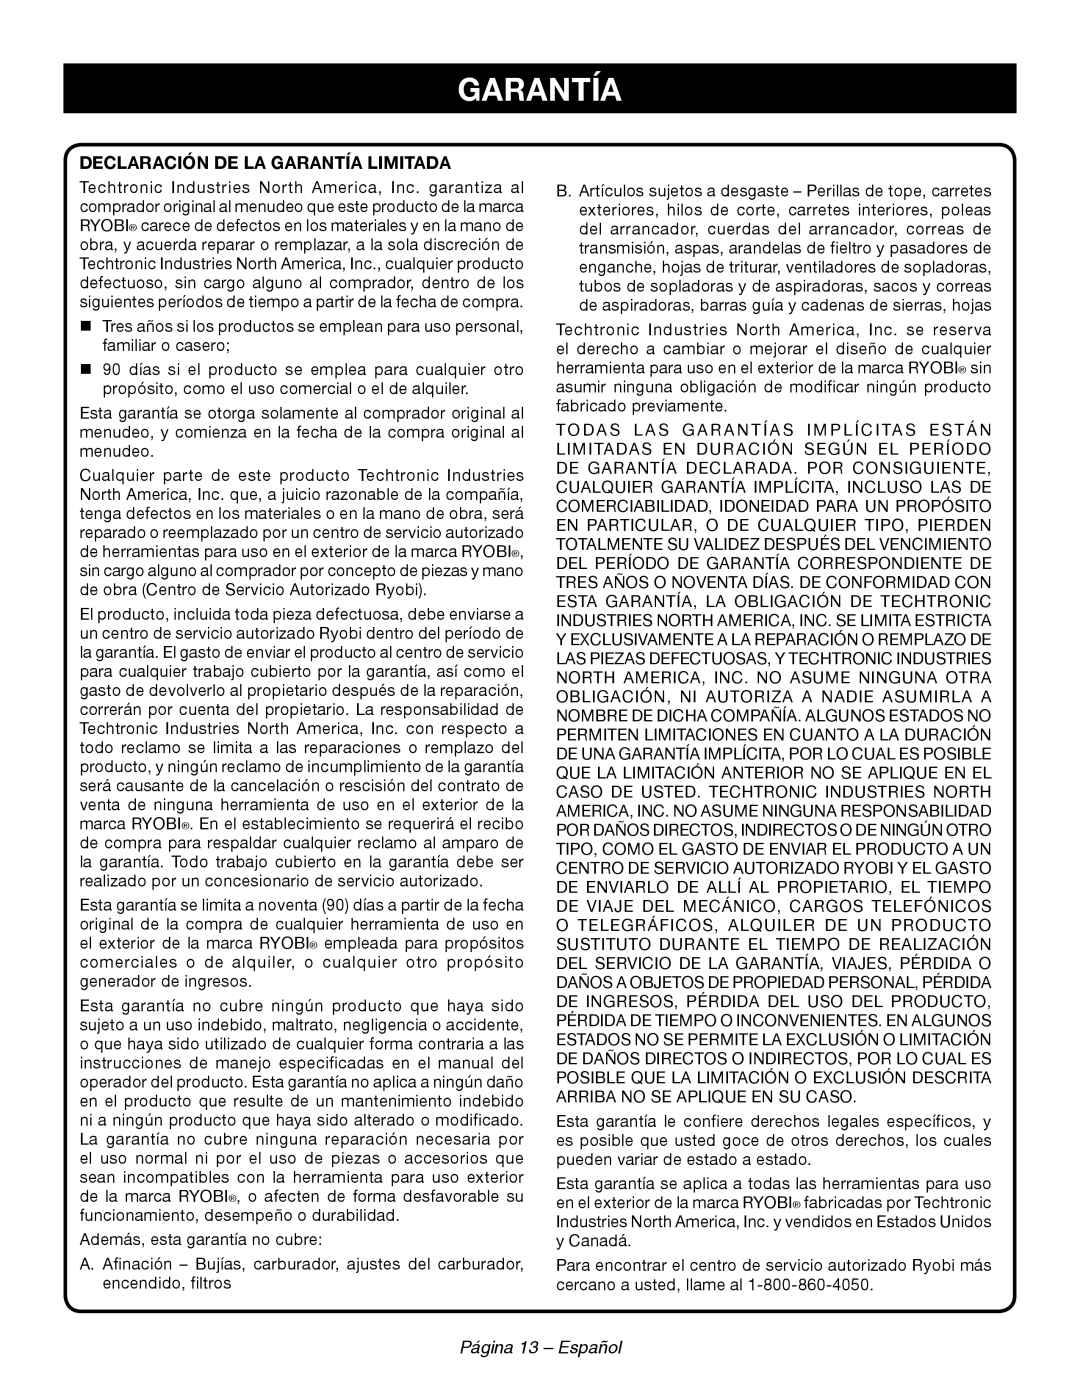 Ryobi RY44140 manuel dutilisation Página 13 - Español, Declaración De La Garantía Limitada 